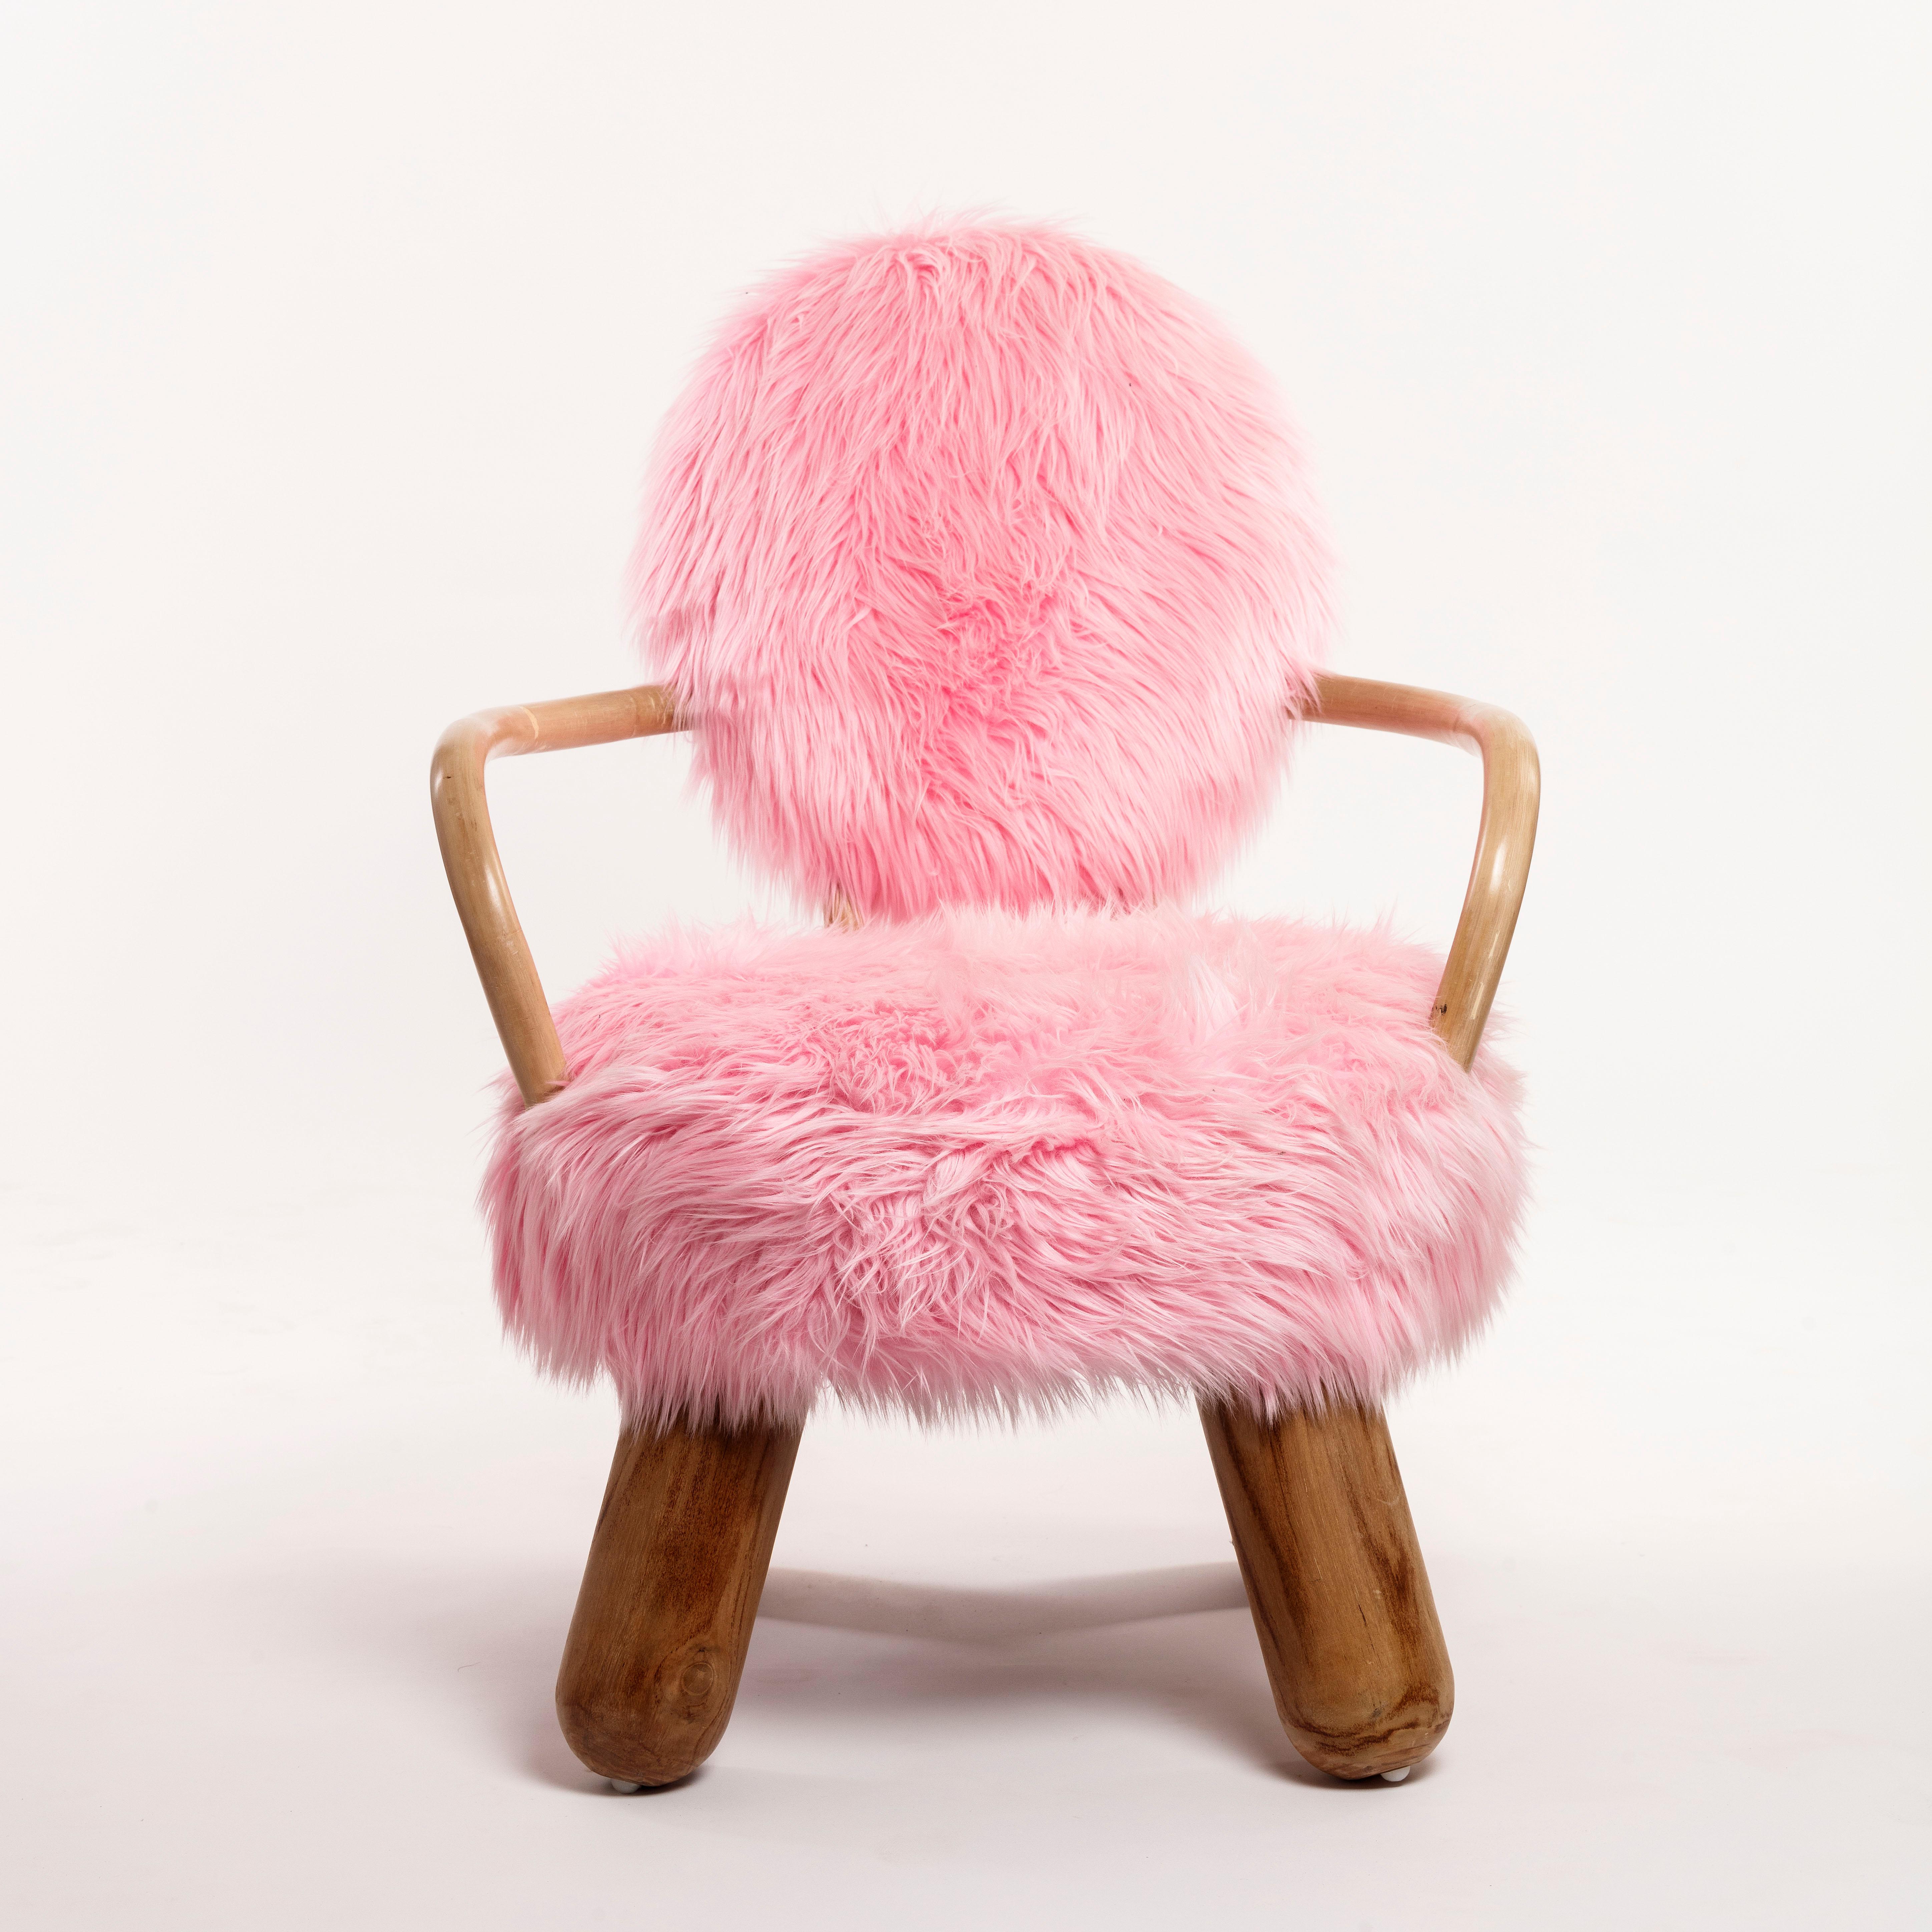 Ces rares et impressionnantes chaises fabriquées à la main par Olivier de Schrijver (né en 1958 au Congo) allient, dans un style unique, une élégance originale et spectaculaire à un confort douillet.

Flirtant subtilement et doucement avec